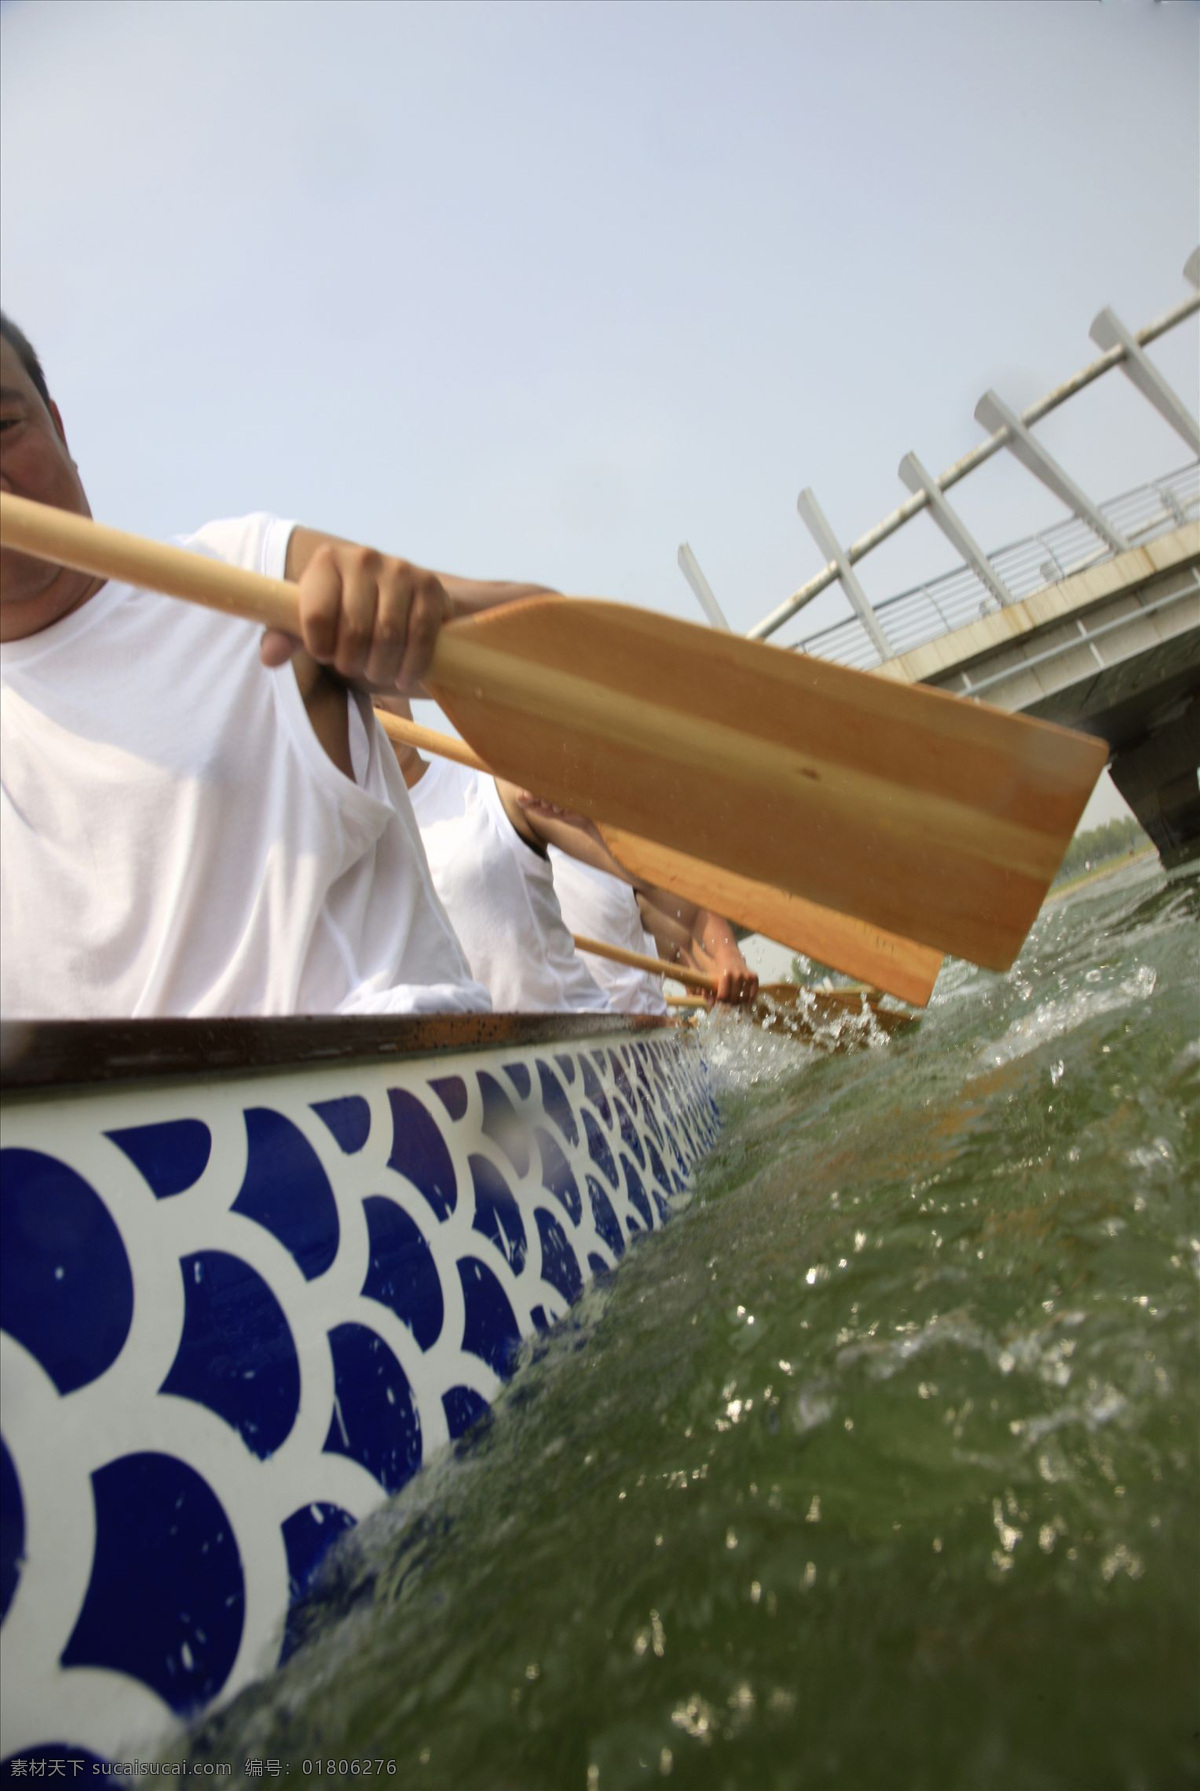 比赛 传统节日 端午节 河流 节日庆祝 龙舟 赛龙舟 船浆 水面 划船比赛 文化艺术 节日素材